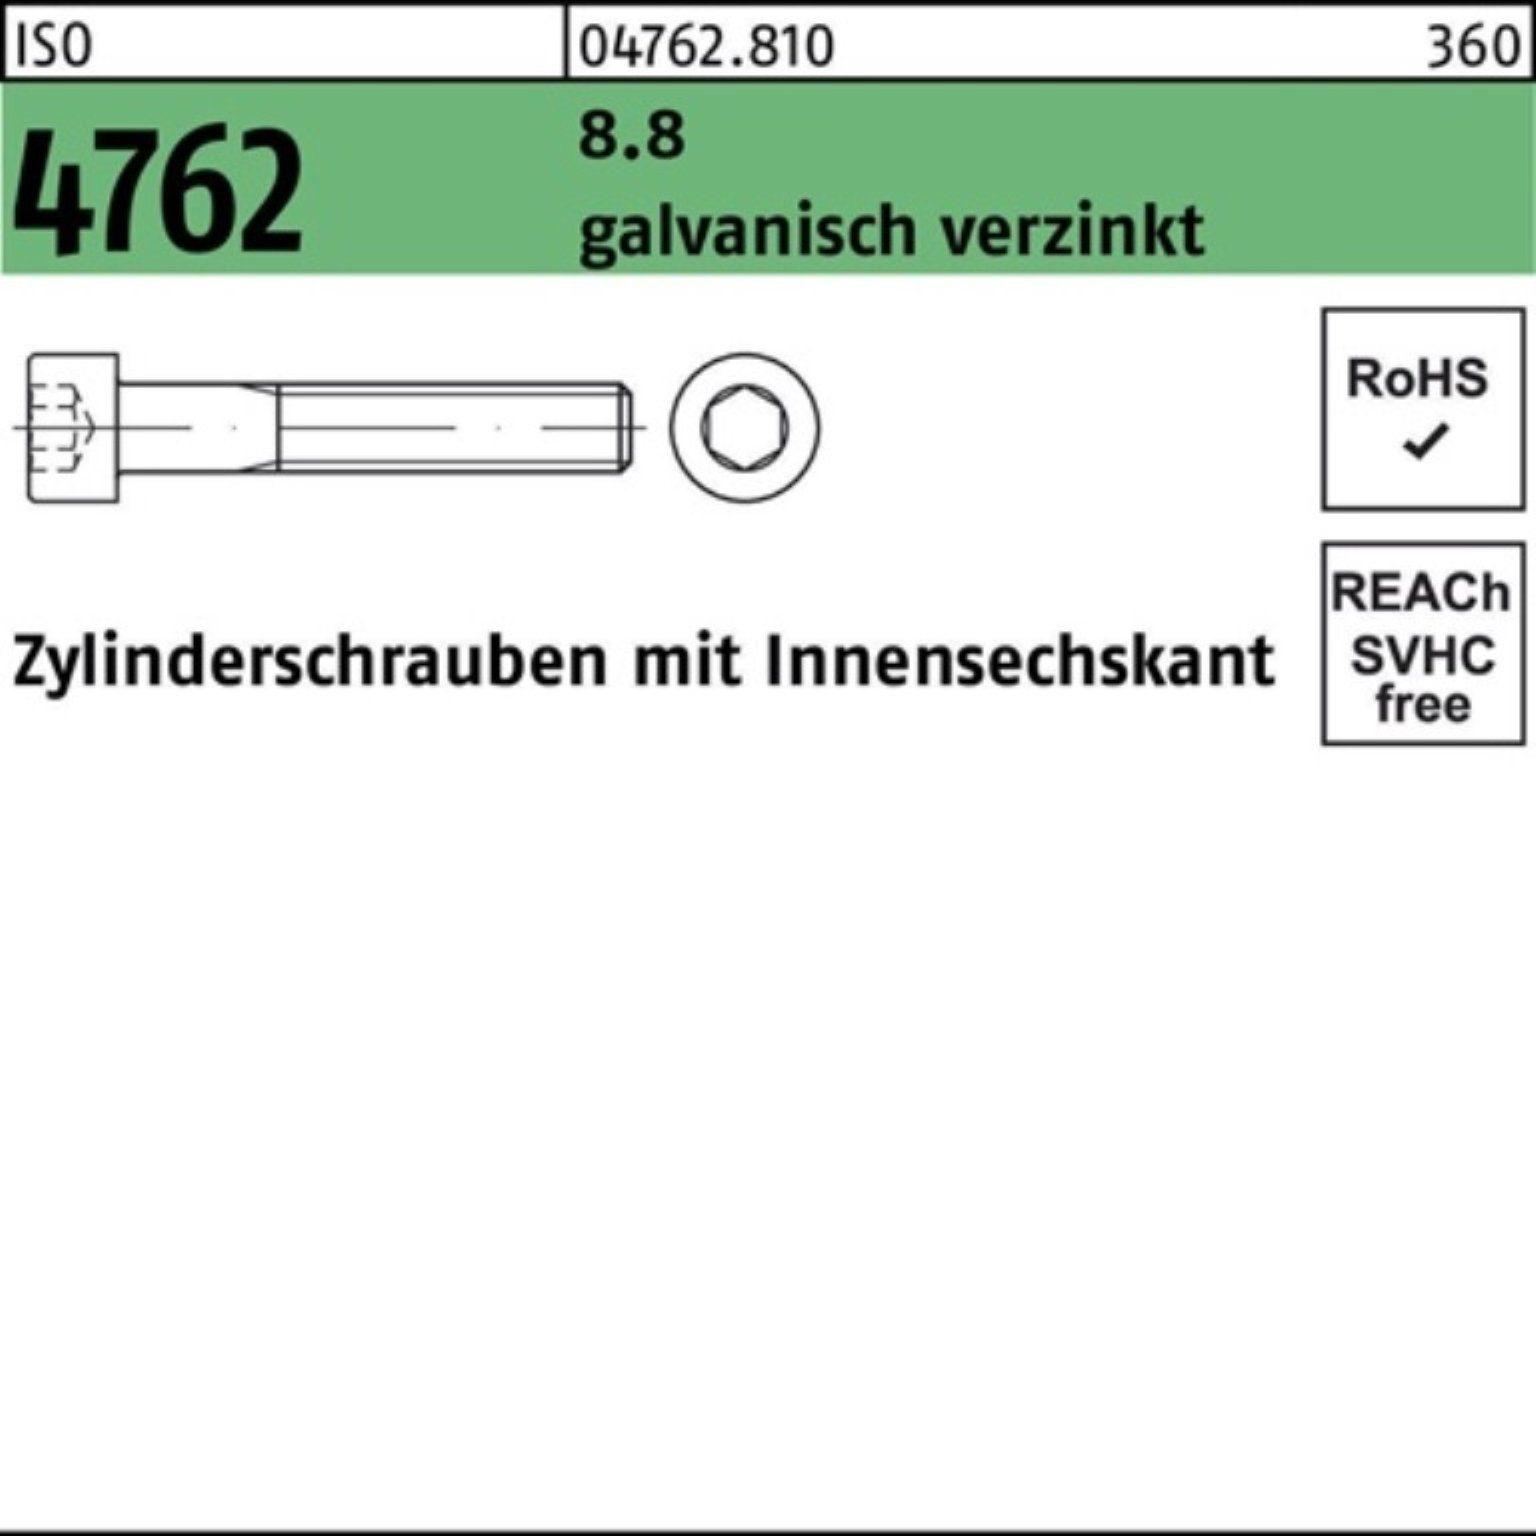 1 galv.verz. Reyher 8.8 ISO Zylinderschraube 4762 100er Zylinderschraube Pack Innen-6kt M8x170